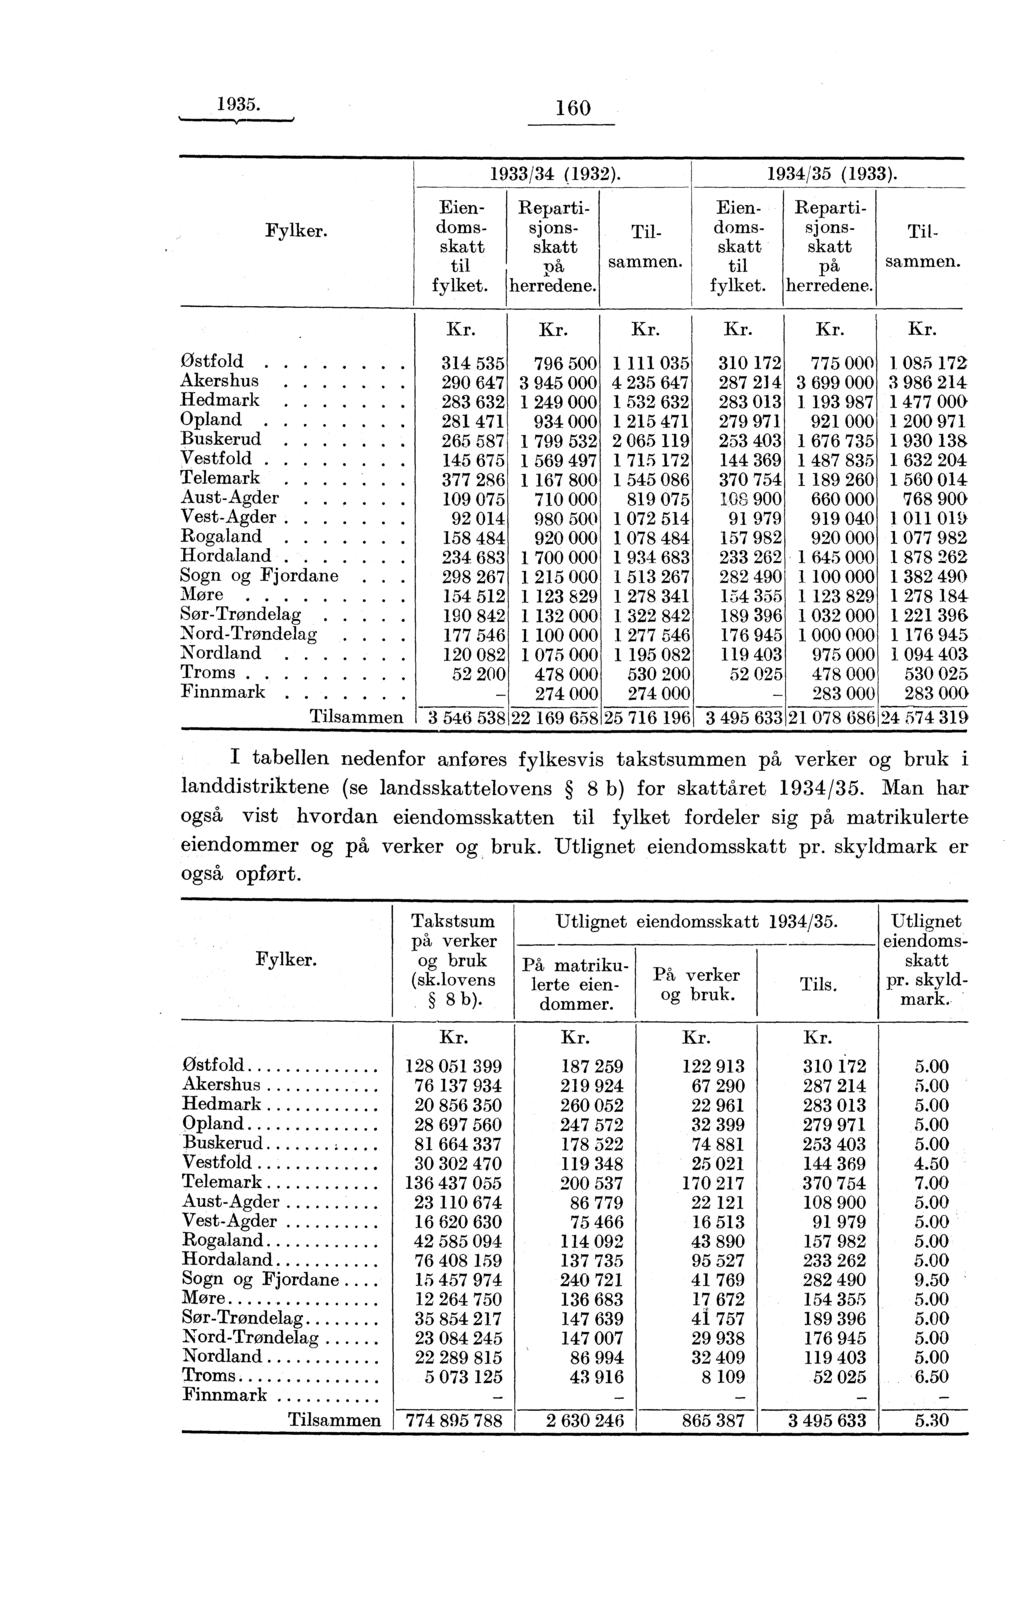 1935. 160 Fylker. Utlignet eiendomsskatt pr. skyldmark. Eiendomsskatt til fylket. 1933/34 (1932). Repartisj onsskatt pa herredene. Tilsammen. Eiendomsskatt til fylket. 1934/35 (1933).